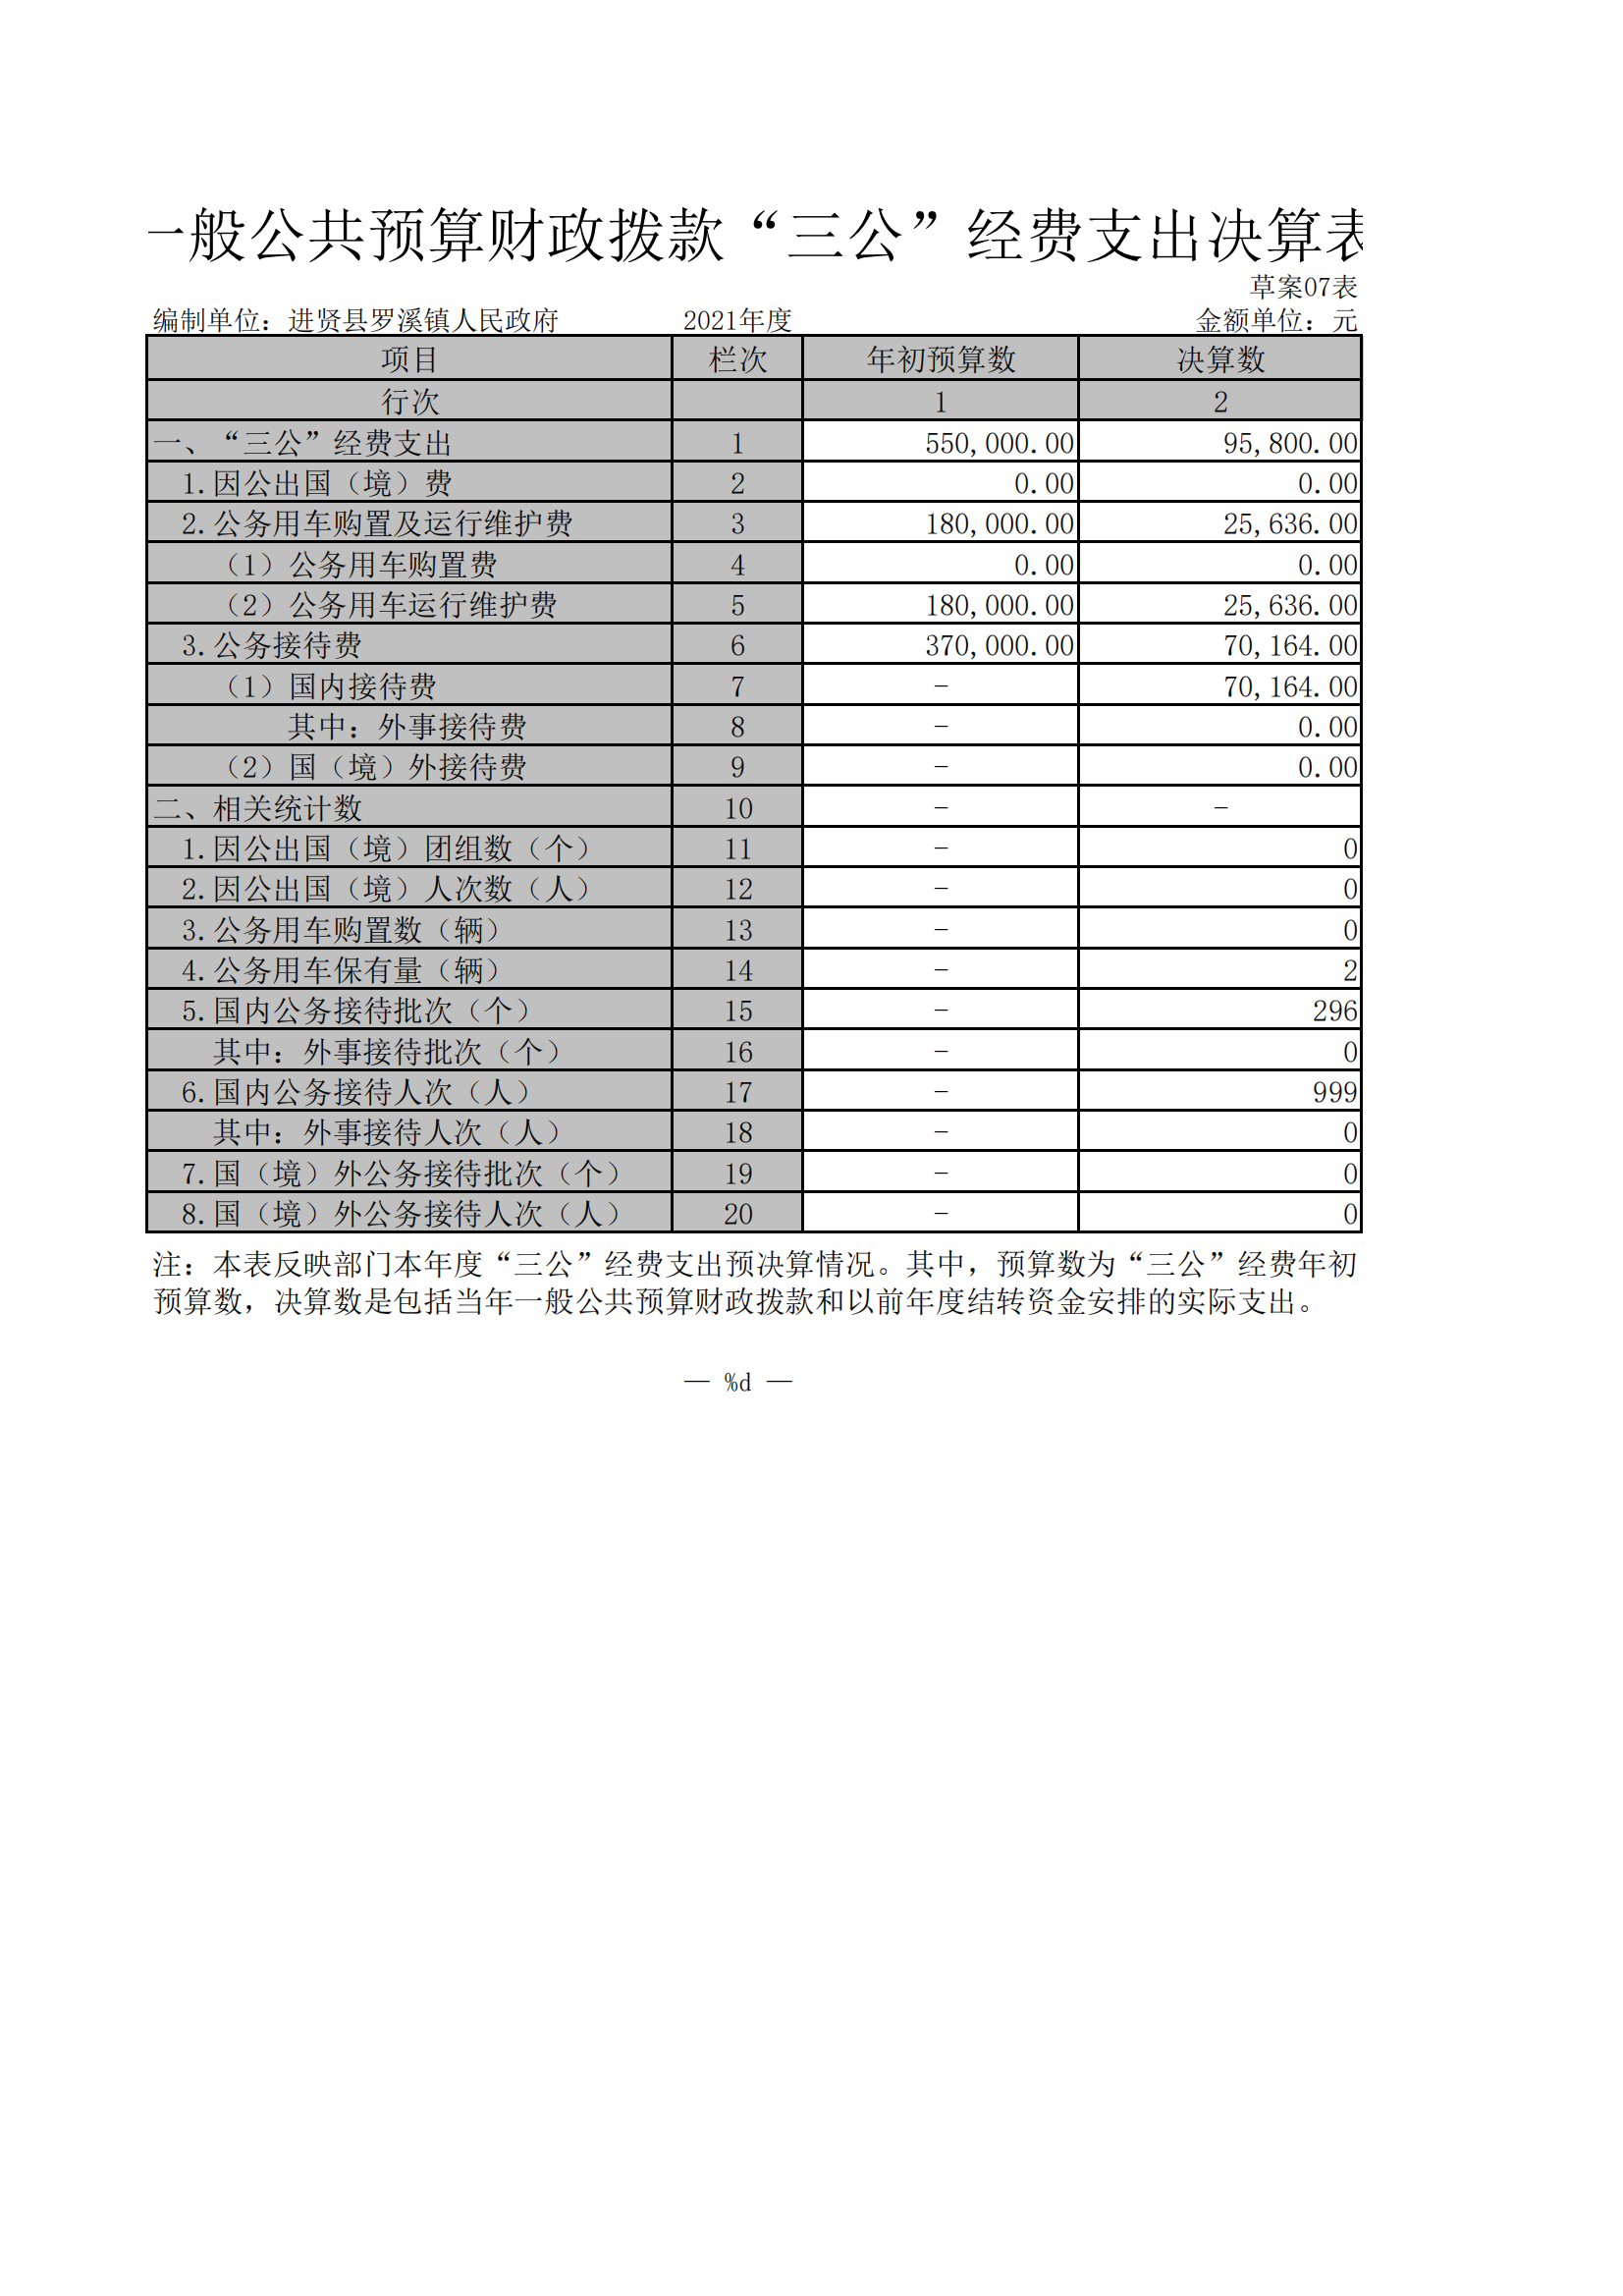 罗溪镇2021年一般公共支出决算表